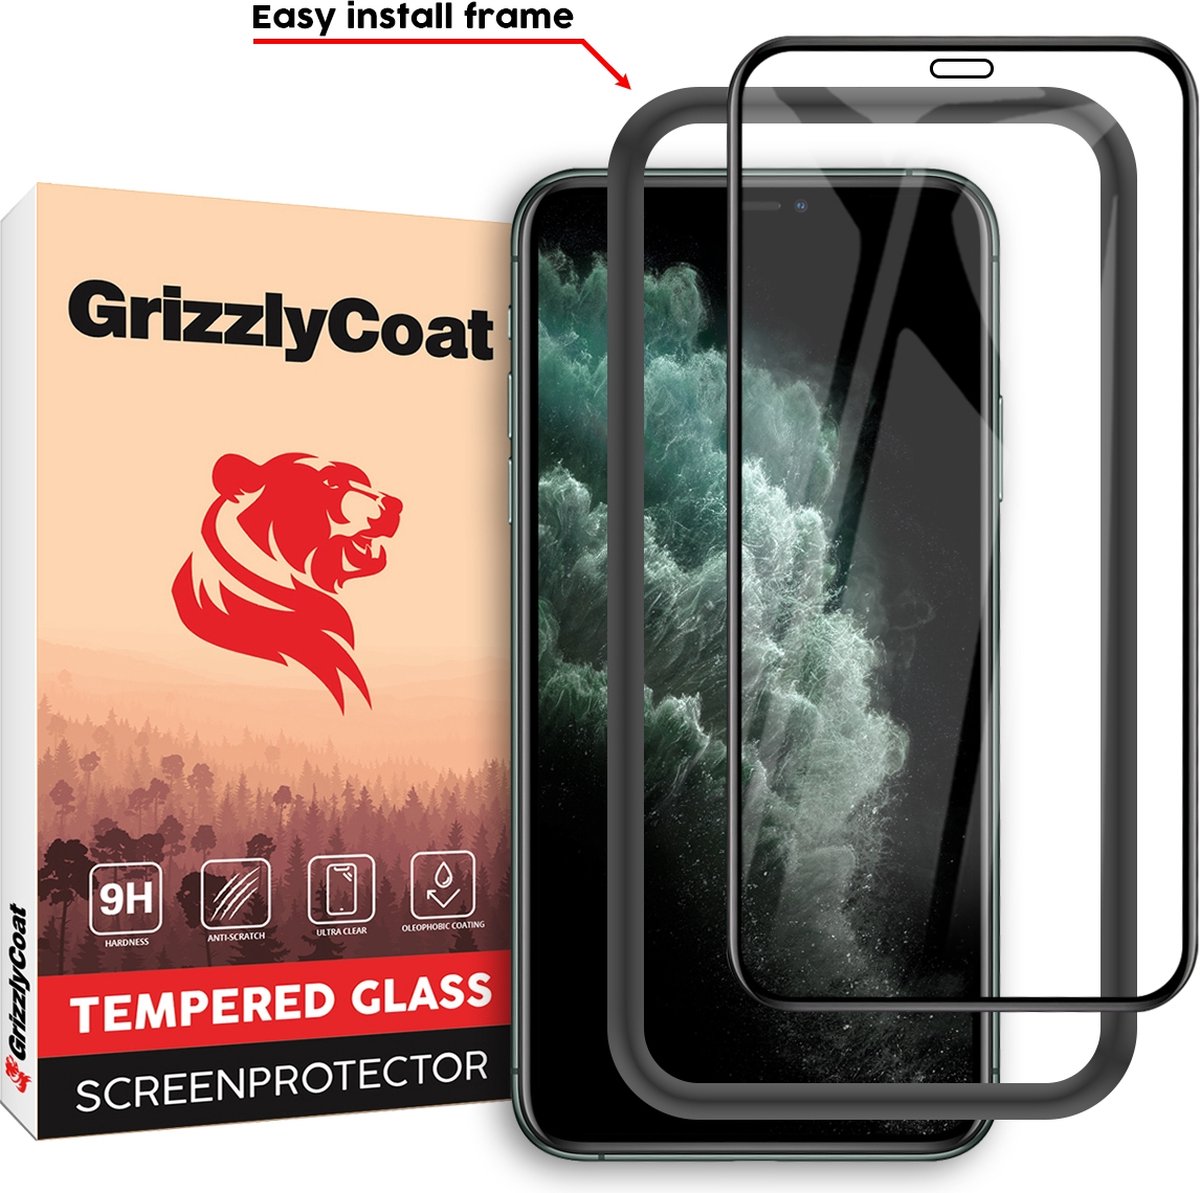 GrizzlyCoat Easy Fit - Screenprotector geschikt voor Apple iPhone 11 Pro Max Glazen Screenprotector - Case Friendly + Installatie Frame - Zwart